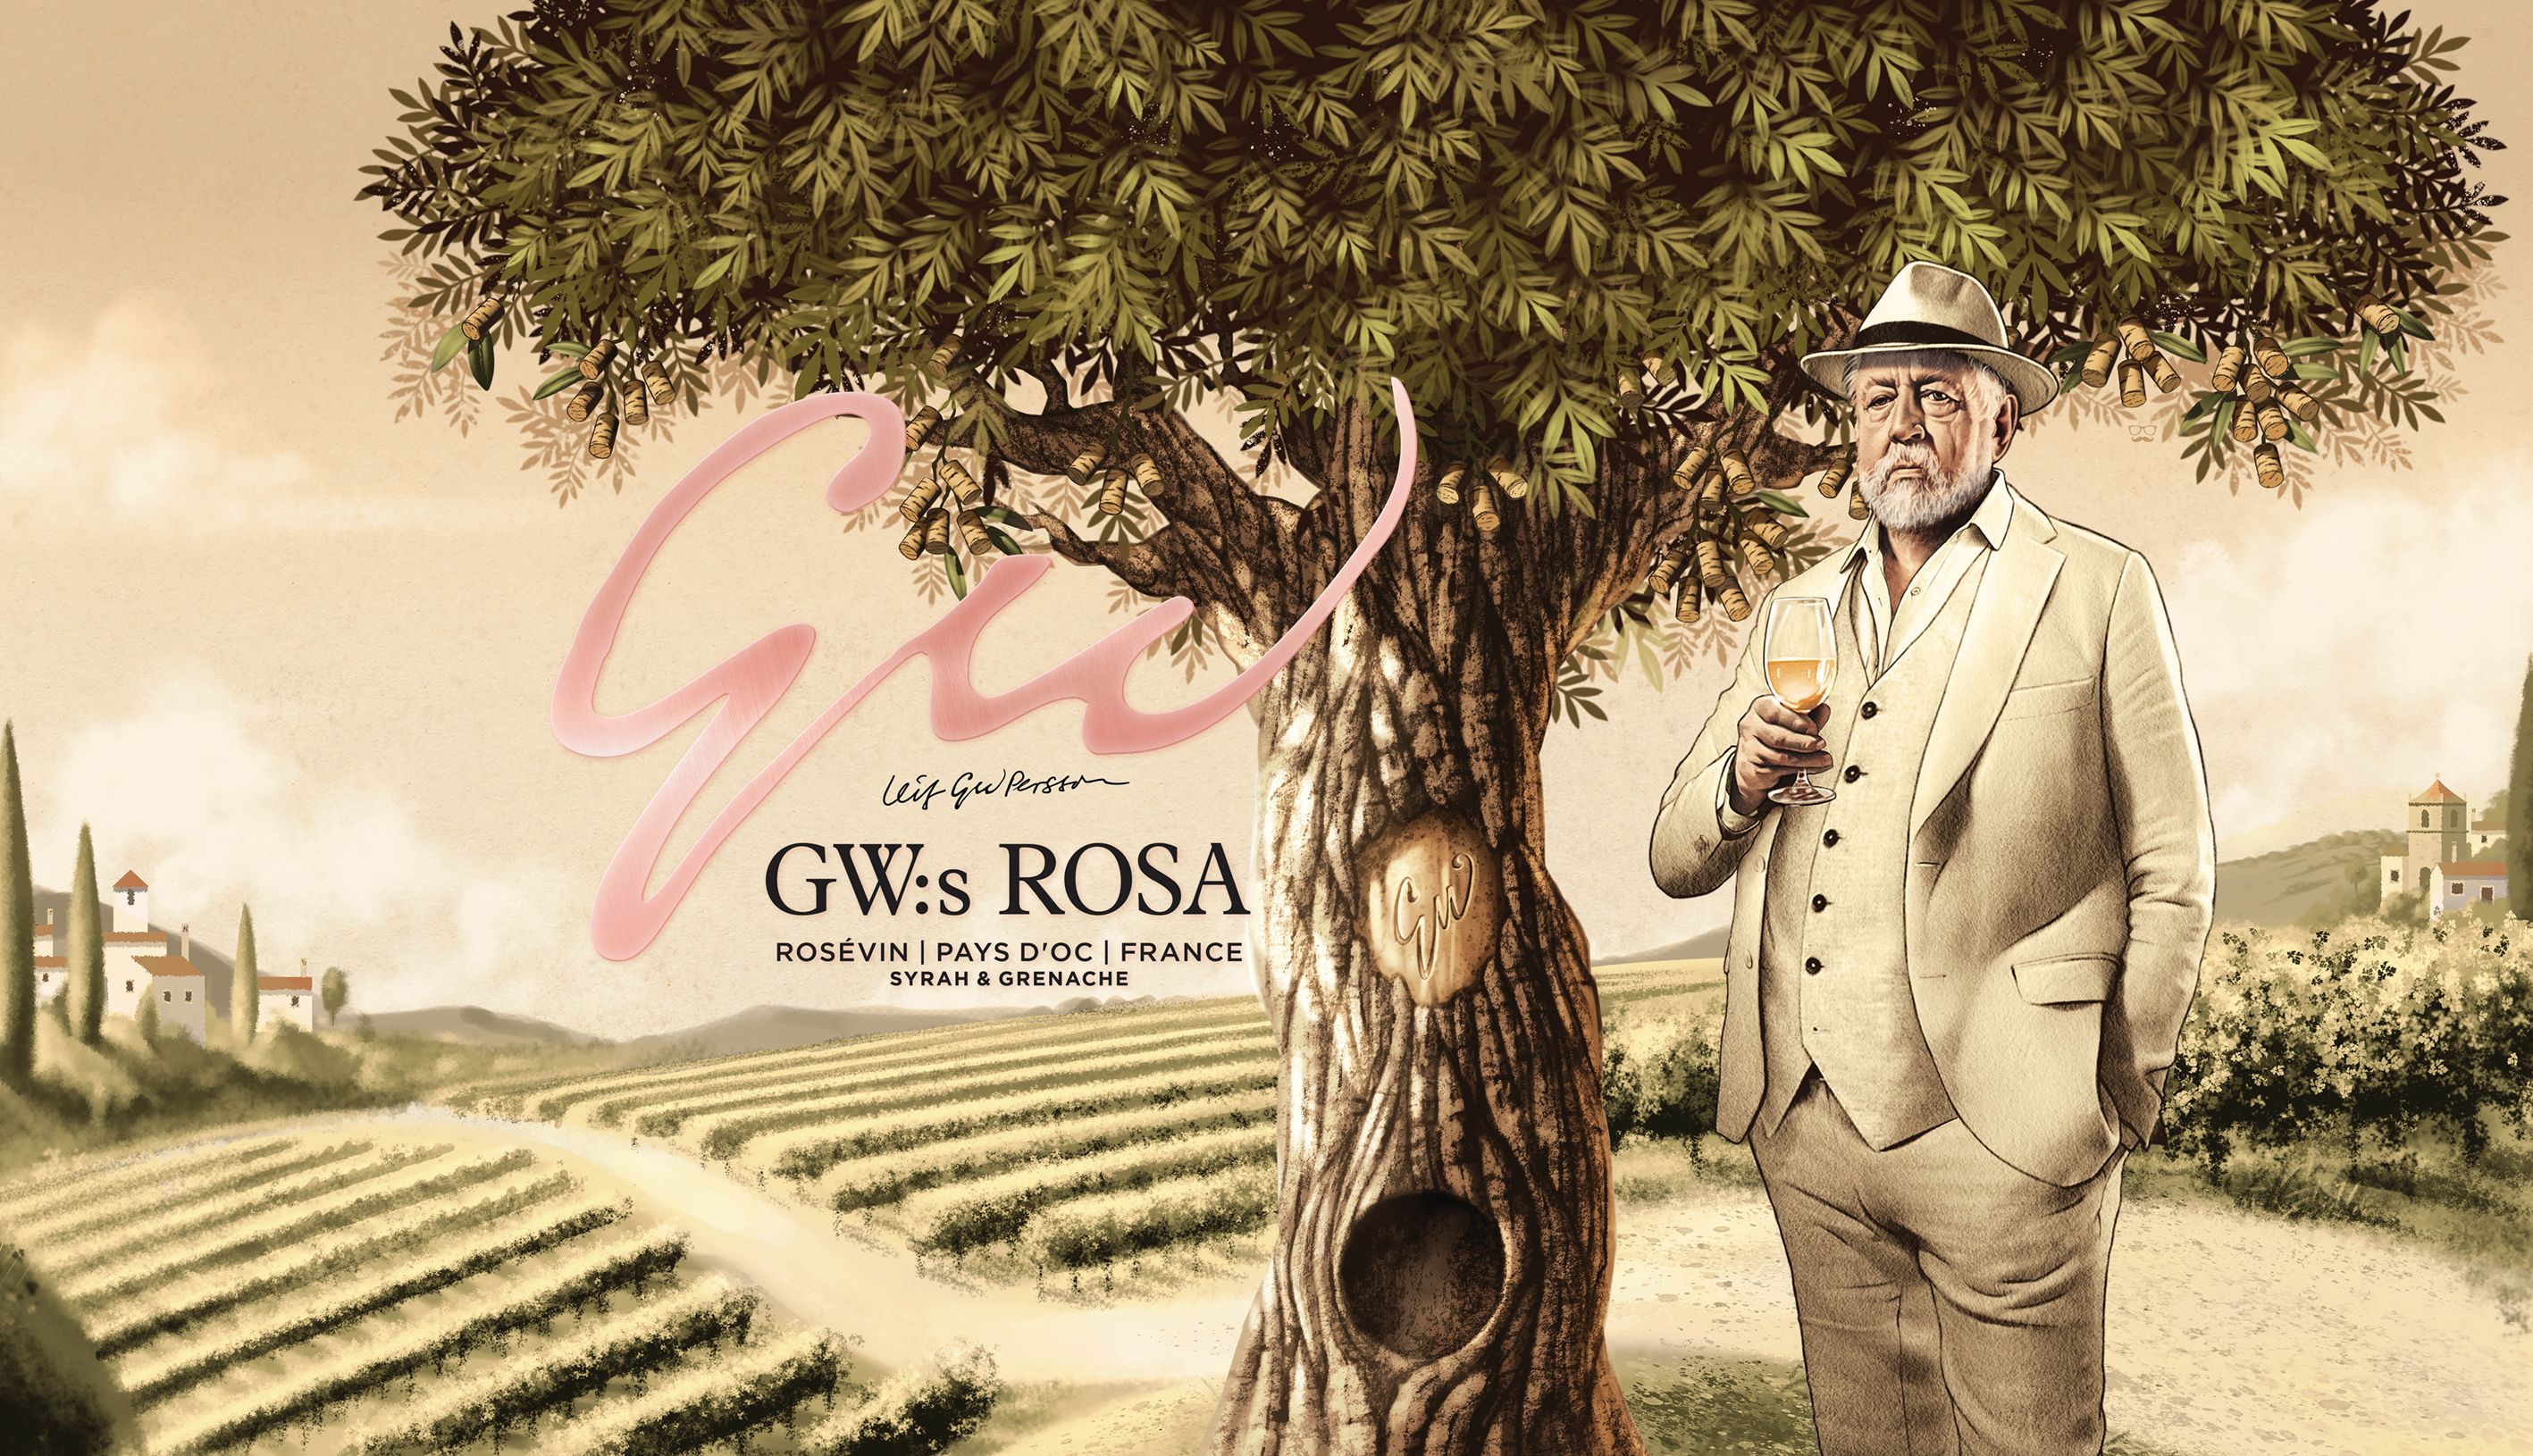 gw:s rosa